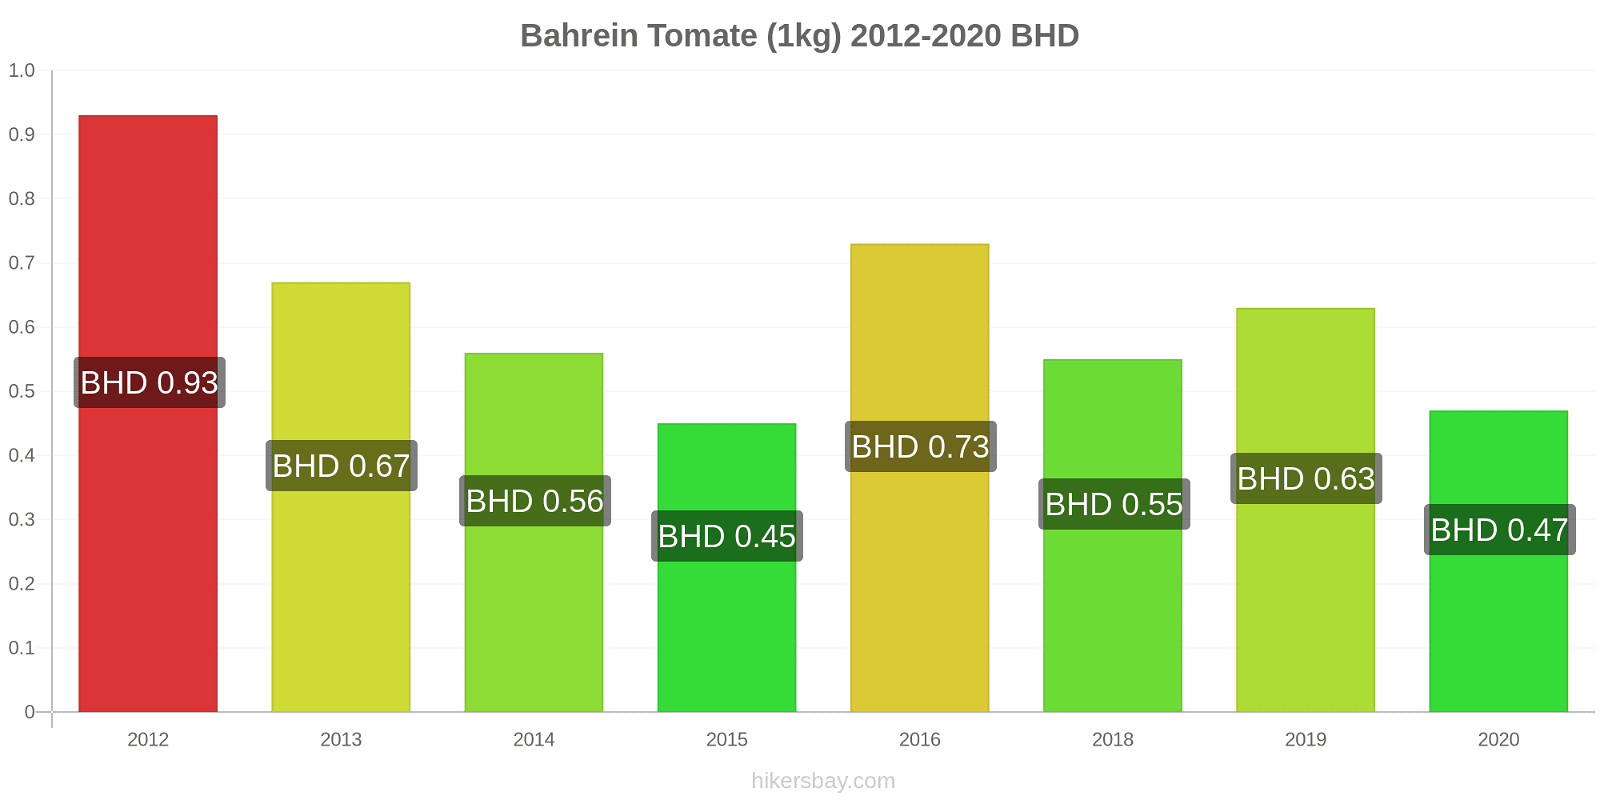 Bahrein variação de preço Tomate (1kg) hikersbay.com